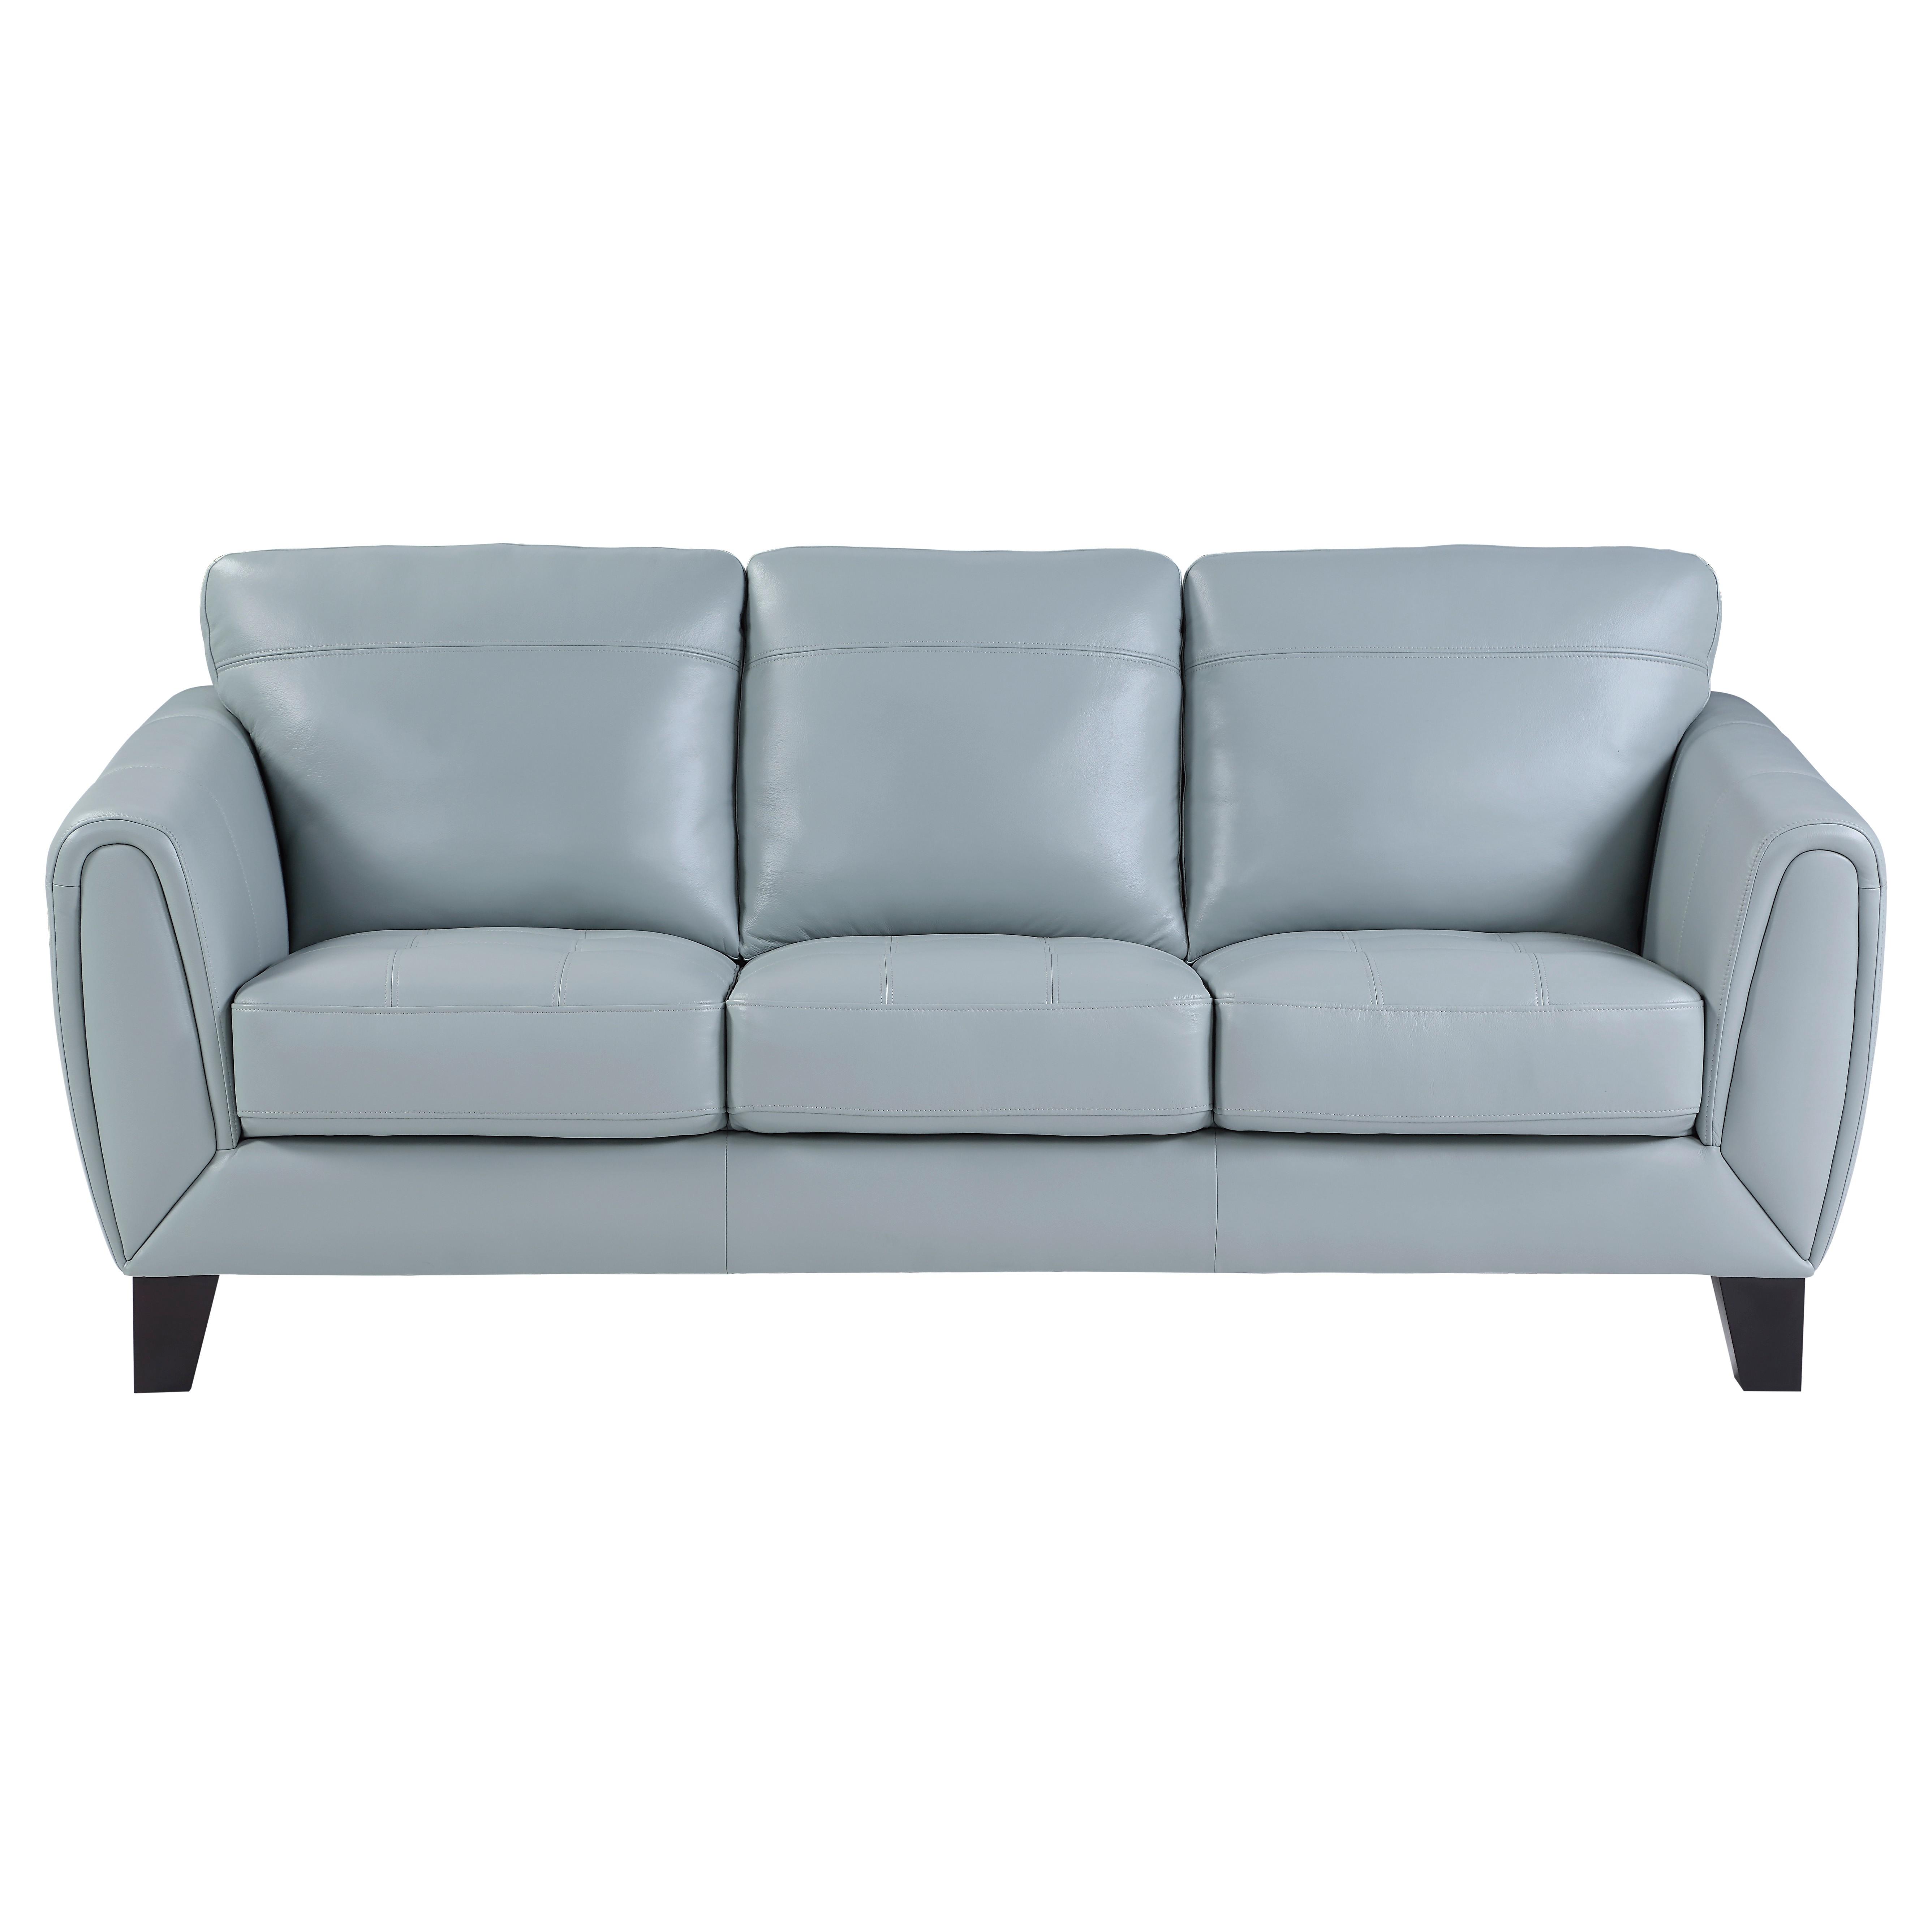 

    
Modern Aqua Leather Living Room Set 3pcs Homelegance 9460AQ Spivey
